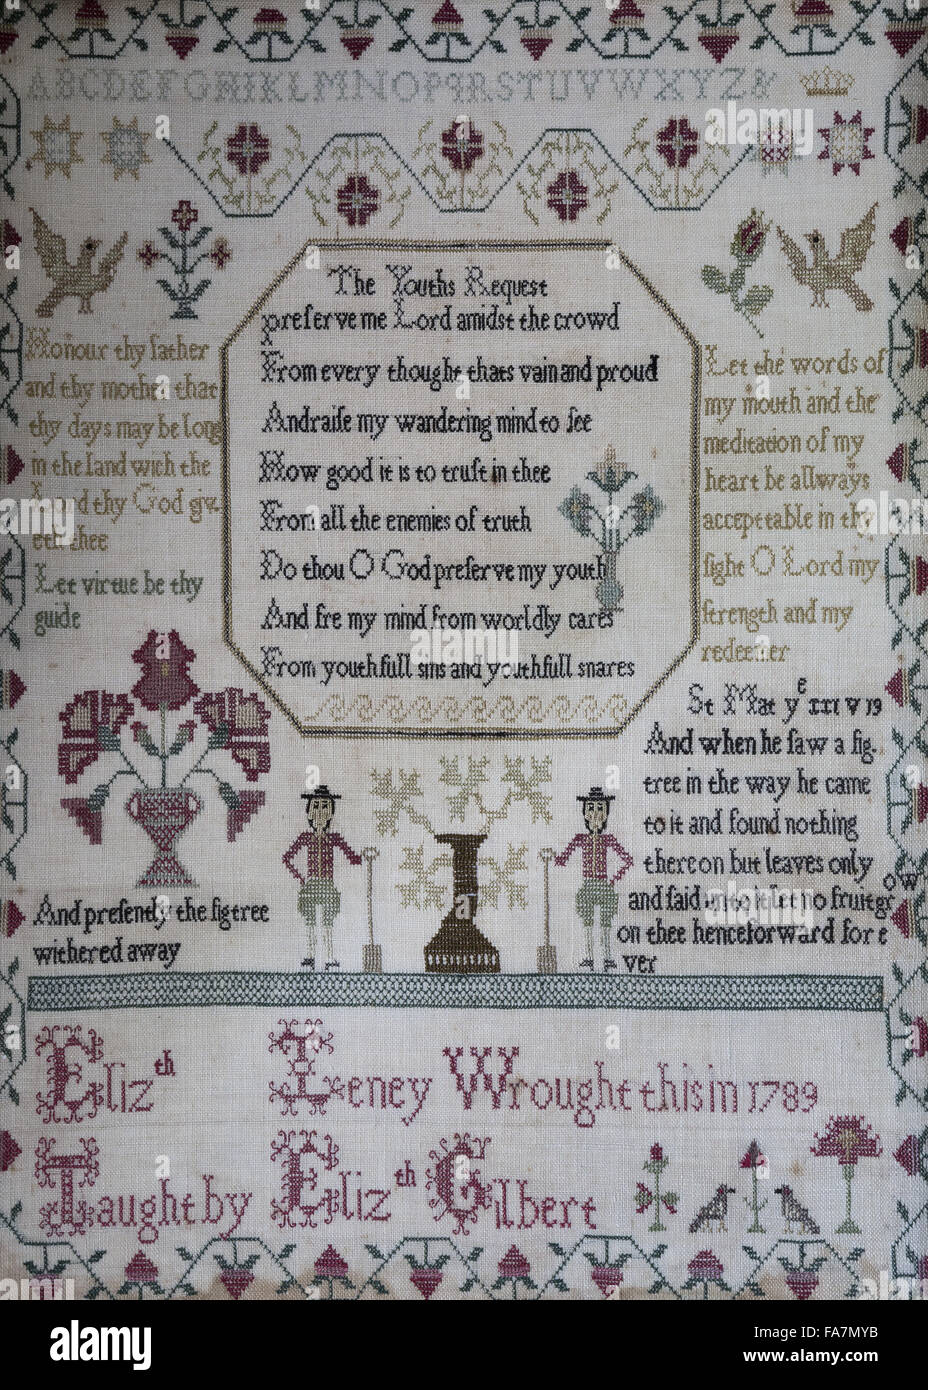 Handarbeiten-Sampler aus dem Jahre 1789, Tintagel Old Post Office, Tintagel, Cornwall. Der Sampler wurde von Elizabeth Leney gearbeitet und verfügt über ein Alphabet, Blumen und Vogelmotiven und ein Gedicht mit dem Titel "The Jugendliche anfordern". Stockfoto